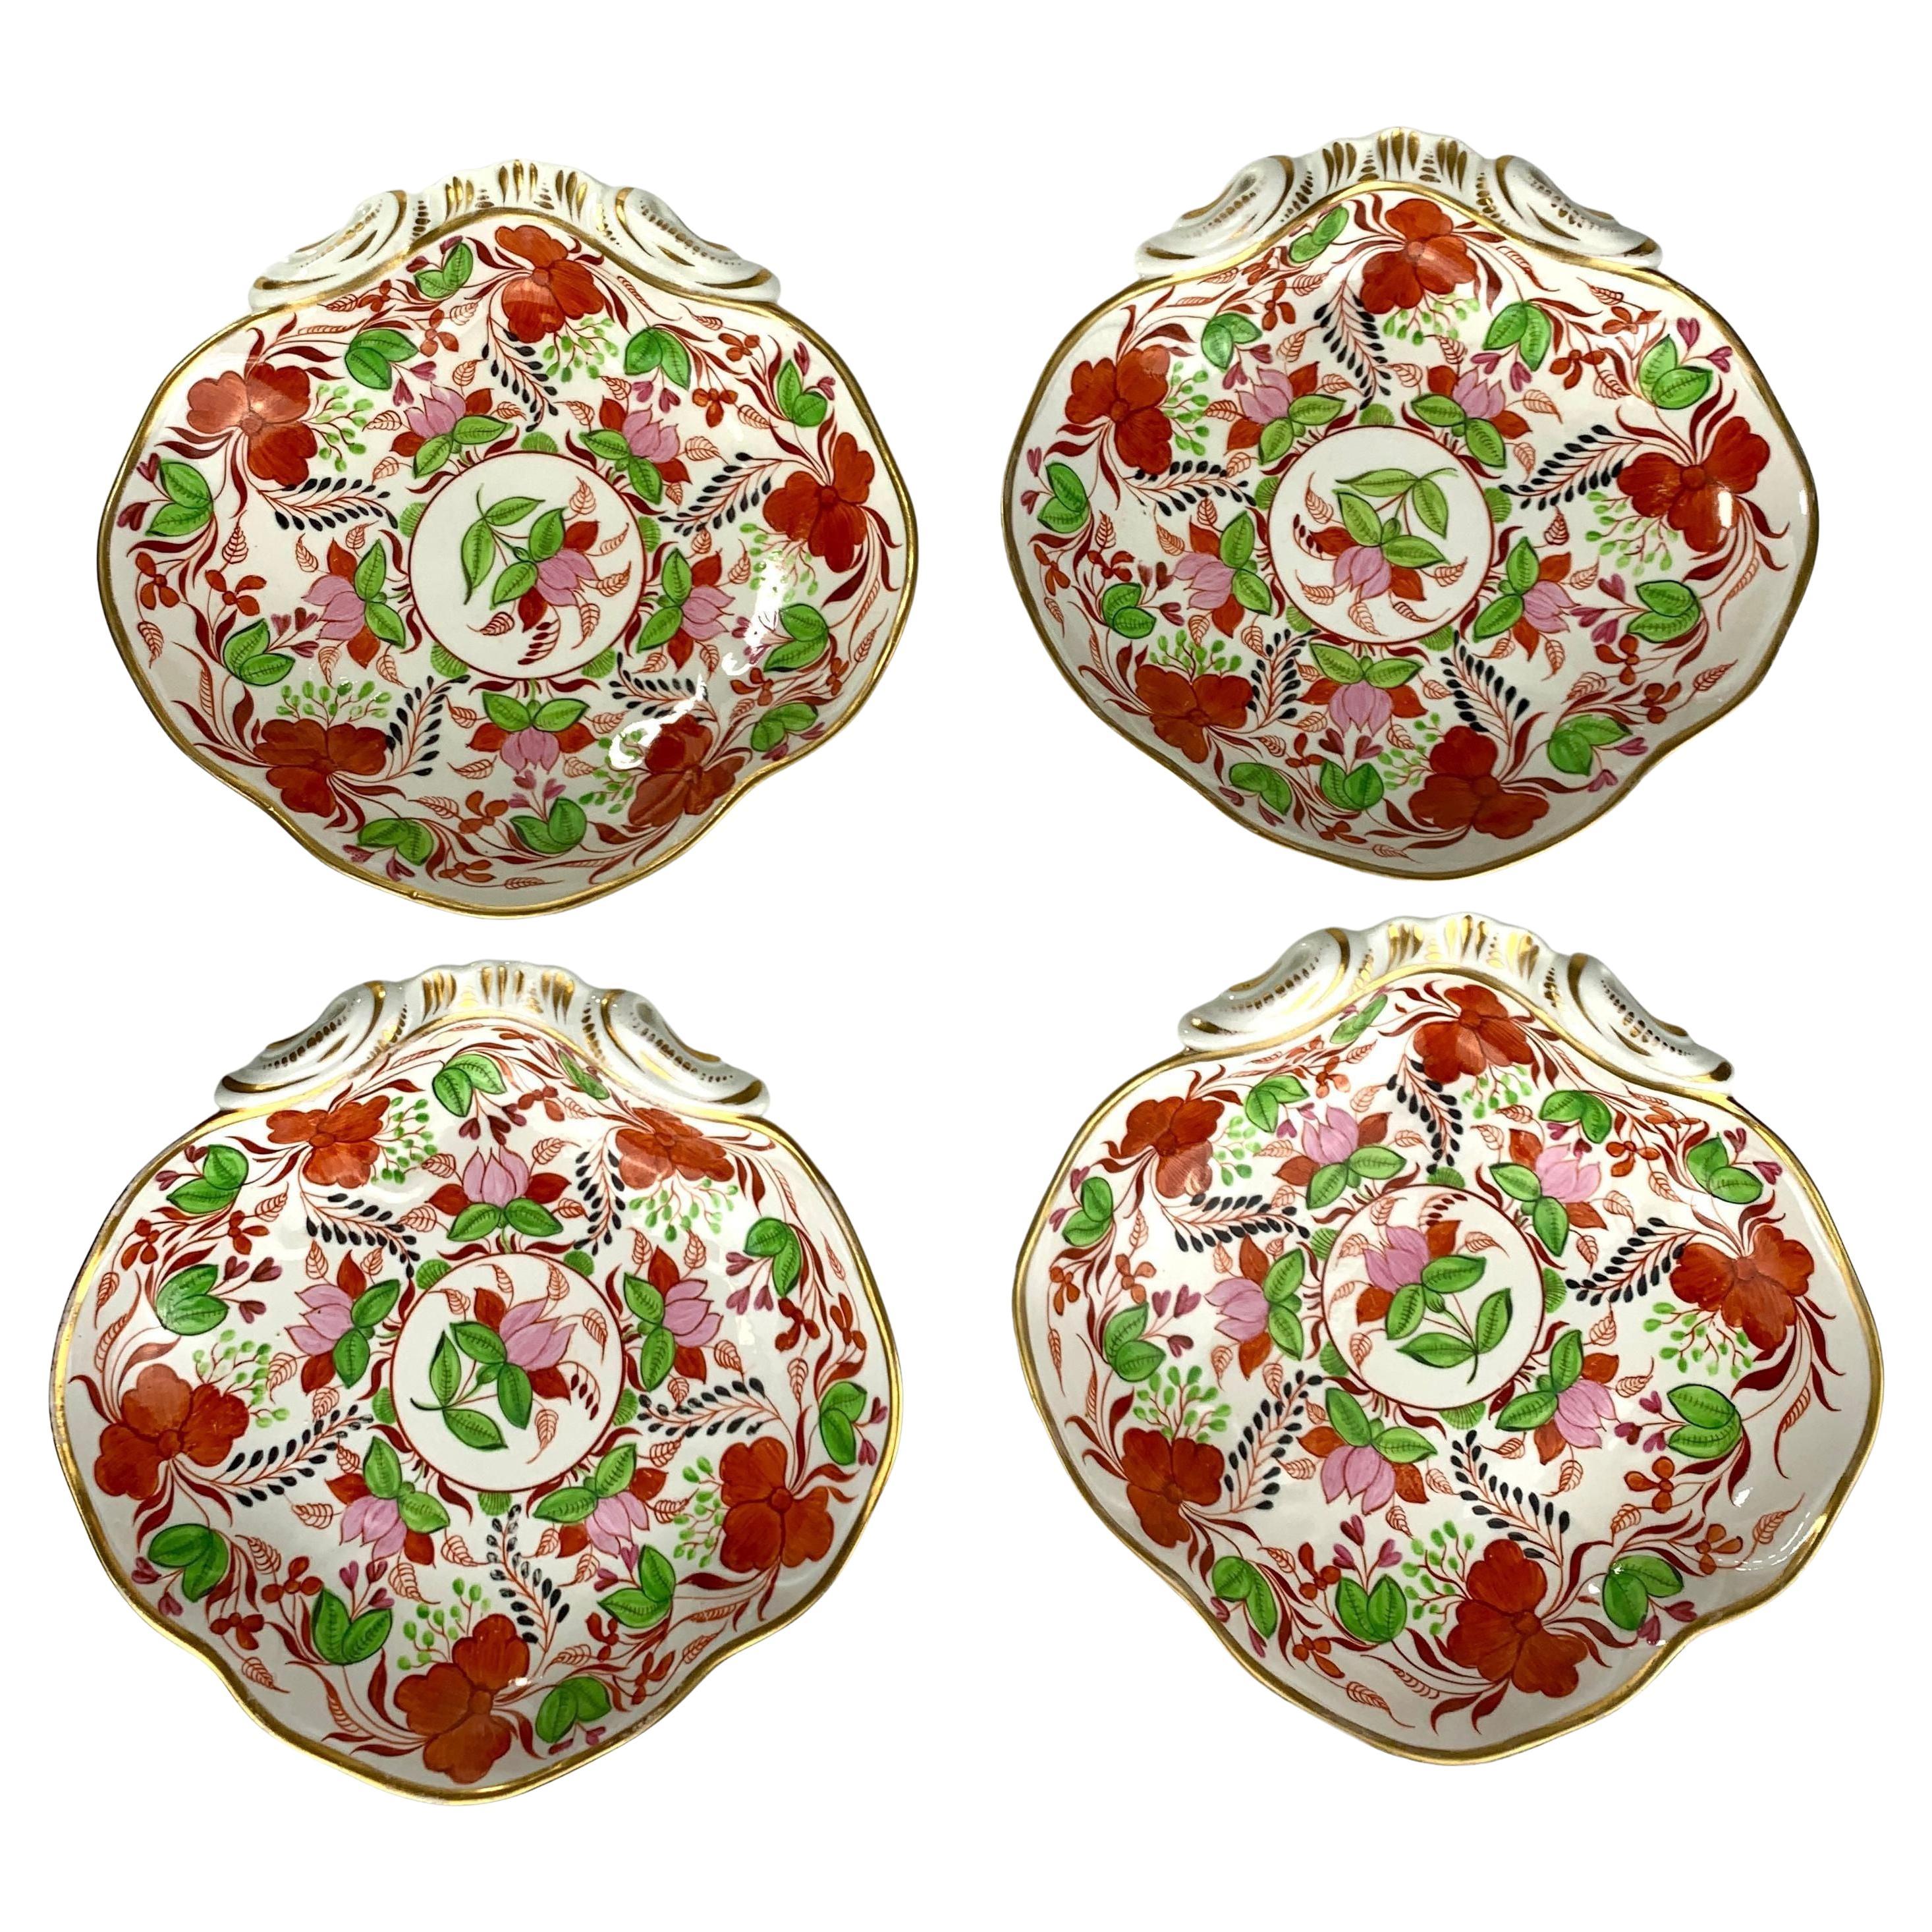 Vier antike englische Porzellanschalen in Muschelform aus der Zeit um 1810